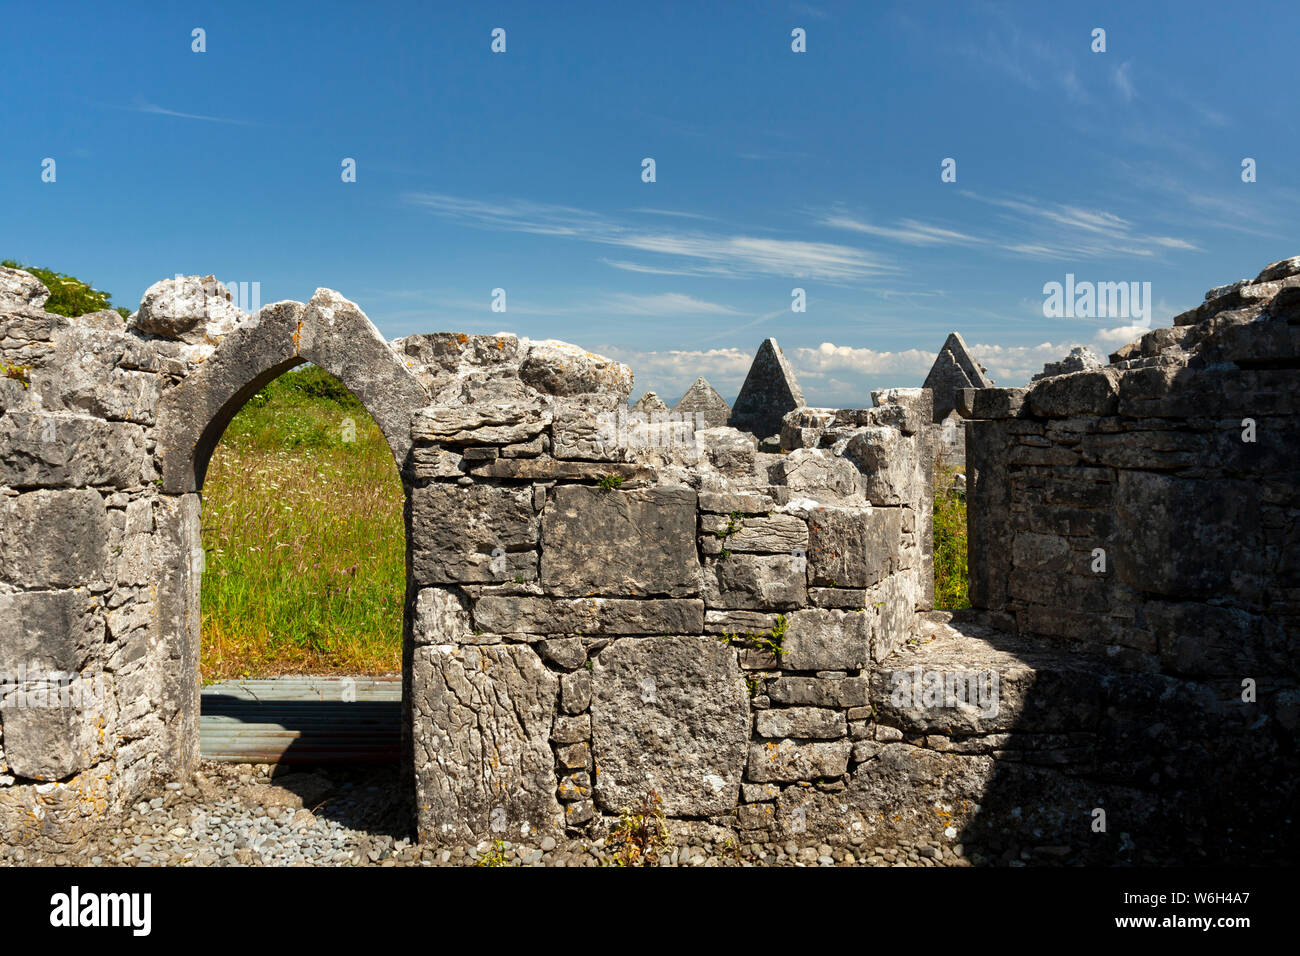 Ruines d'un bâtiment en pierre, l'Inishmore Island, façon sauvage de l'Atlantique ; l'Inishmore Island, comté de Galway, Irlande Banque D'Images